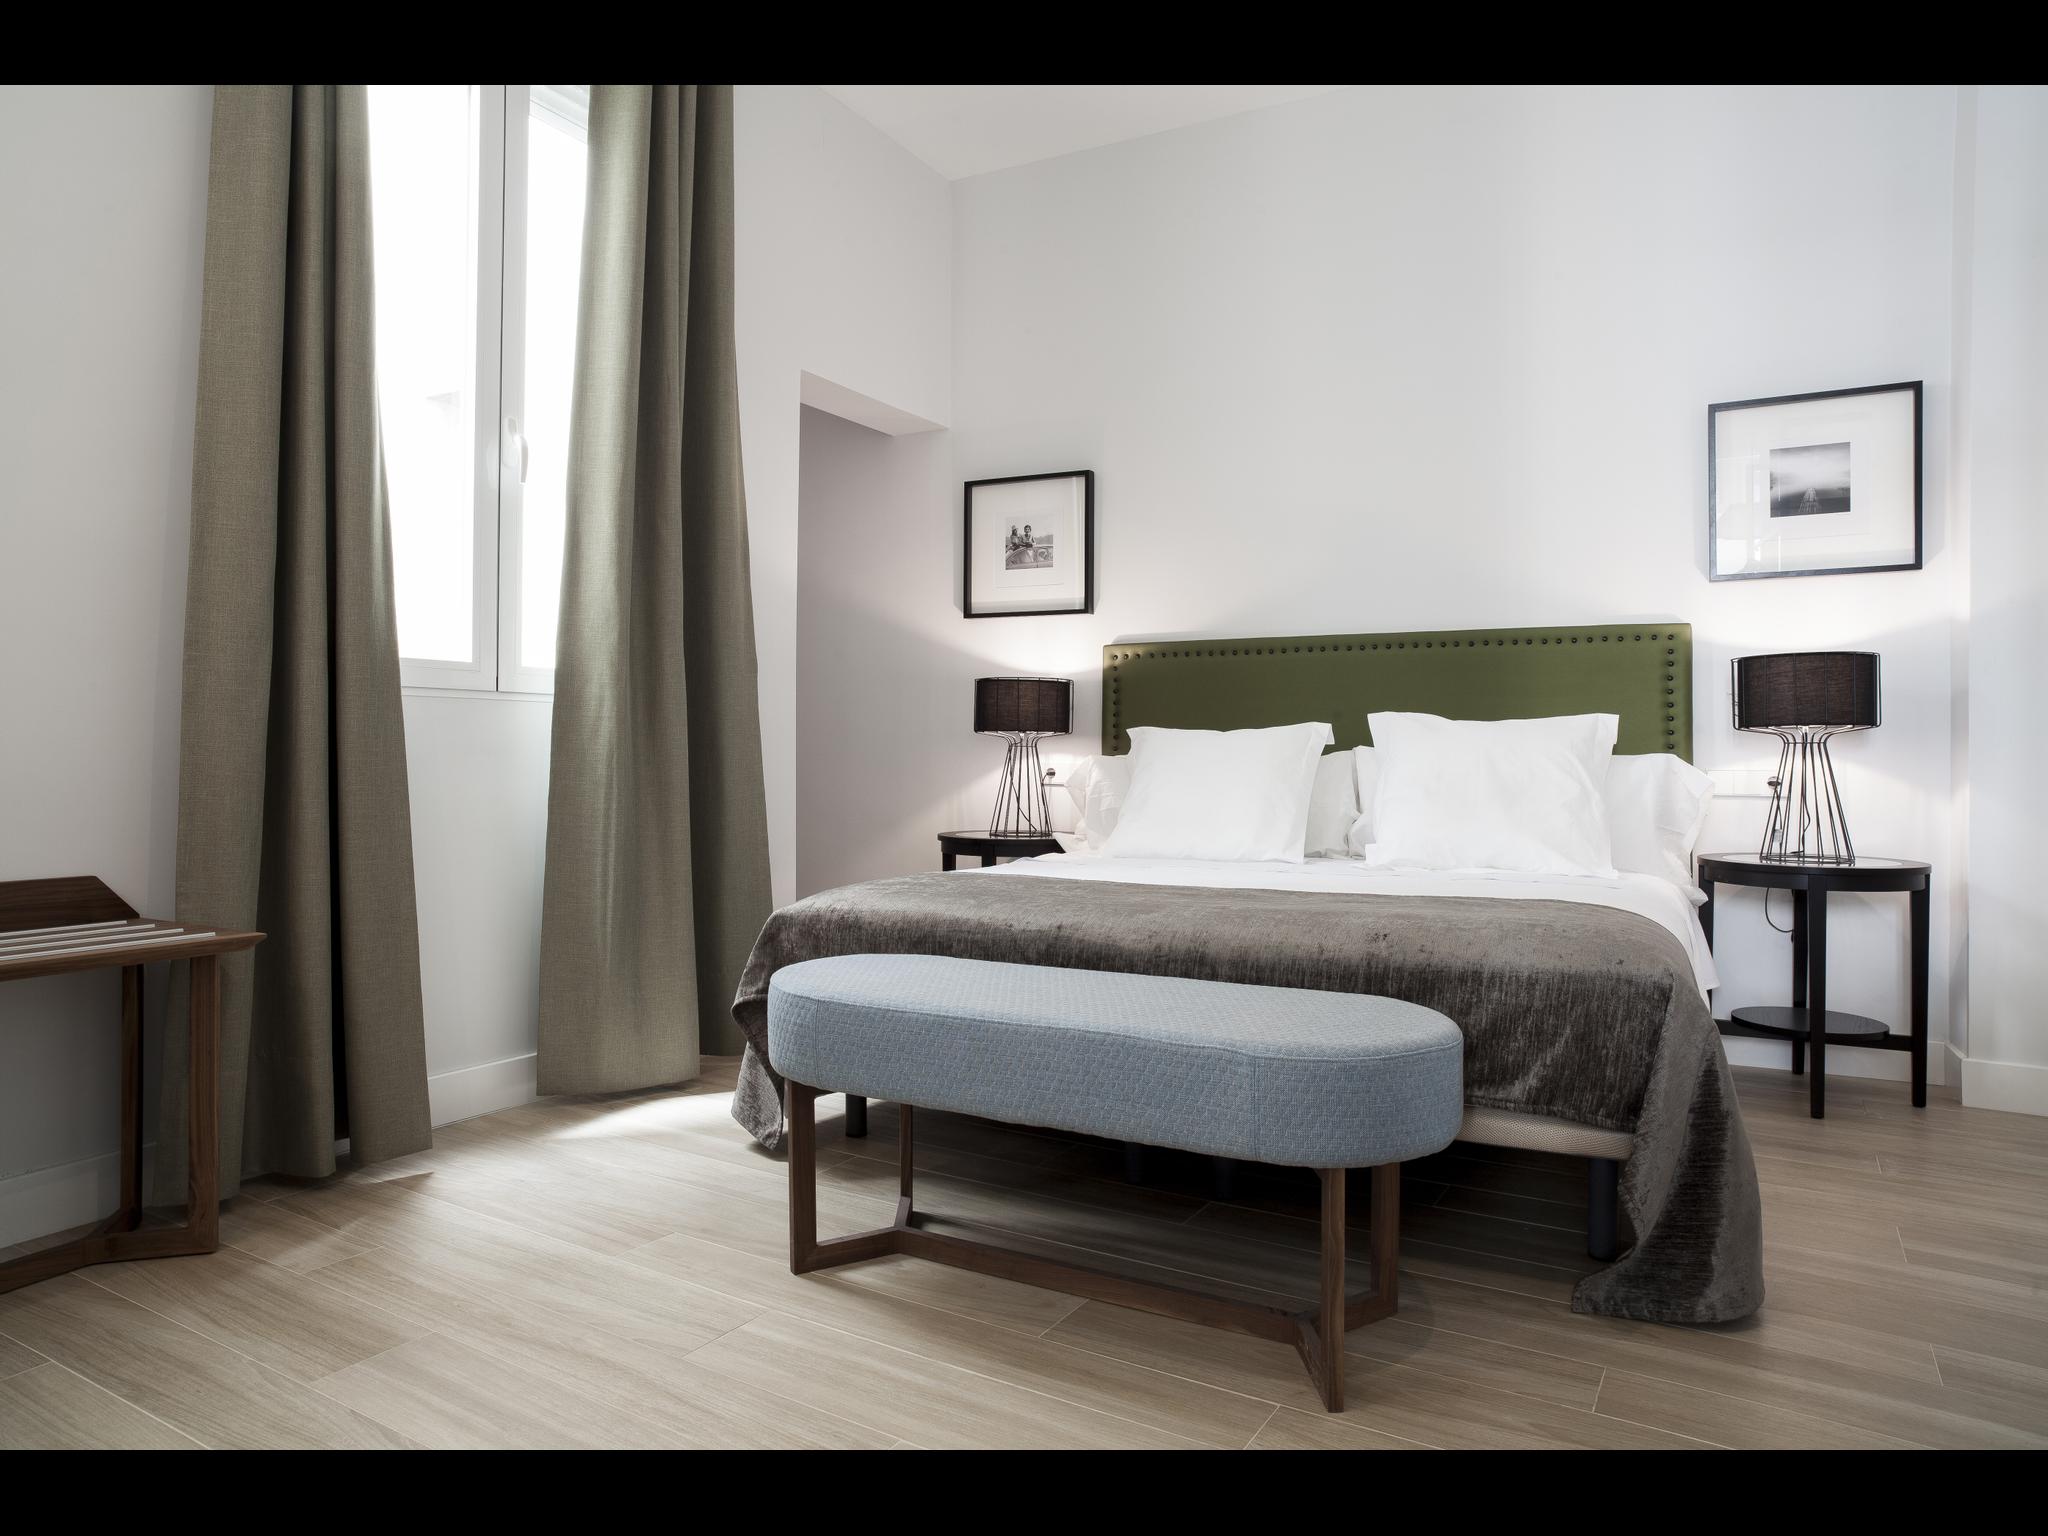 Puebla es un apartamento de lujo en Madrid para expats. Está situado en la calle de la Puebla, Madrid.